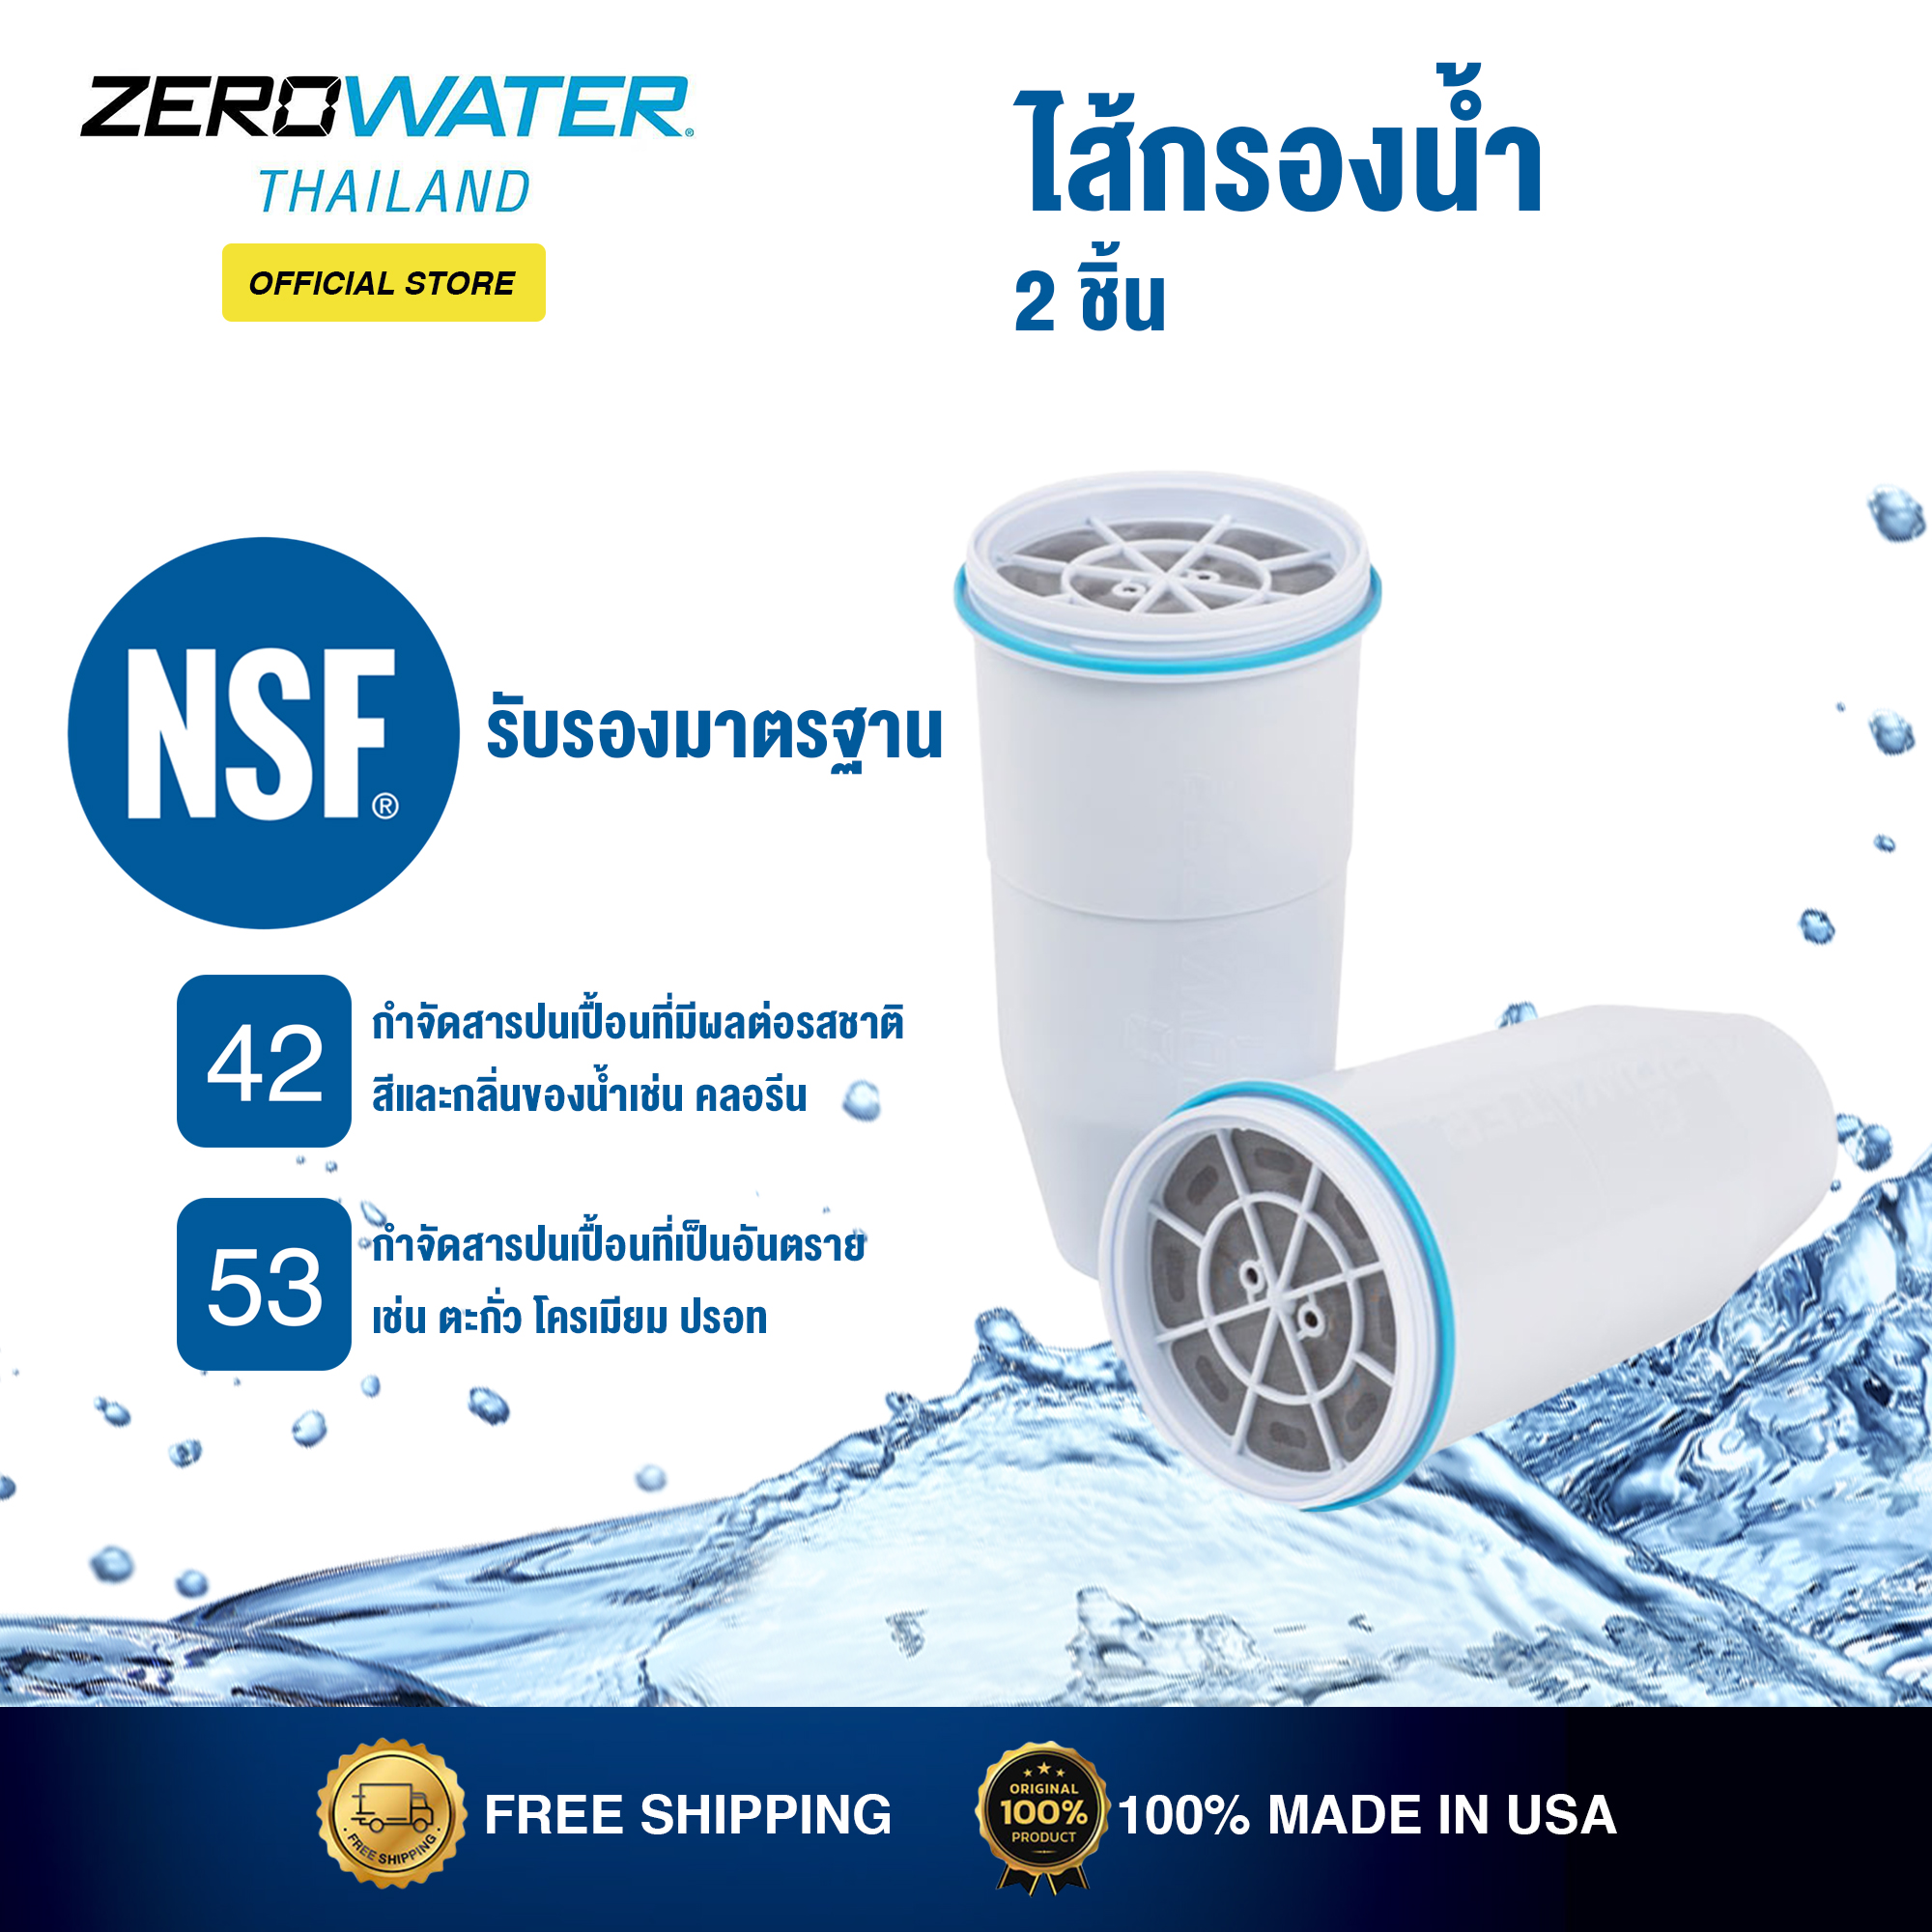 ZeroWater® ไส้กรองน้ำดื่มสะอาด (จำนวน 2 ชิ้น)  ด้วยระบบการกรองน้ำขั้นสูง 5 ชั้น  ขจัดสารแขวนลอยที่ปนเปื้อนและกรองตะกอนได้หมดจดเพื่อให้ได้น้ำดื่มที่สะอาดบริสุทธิ์เทียบเท่ากับน้ำดื่มบรรจุขวด  ได้รับการรับรองมาตรฐาน NFS 42 & 53 (ฟรีจัดส่ง)